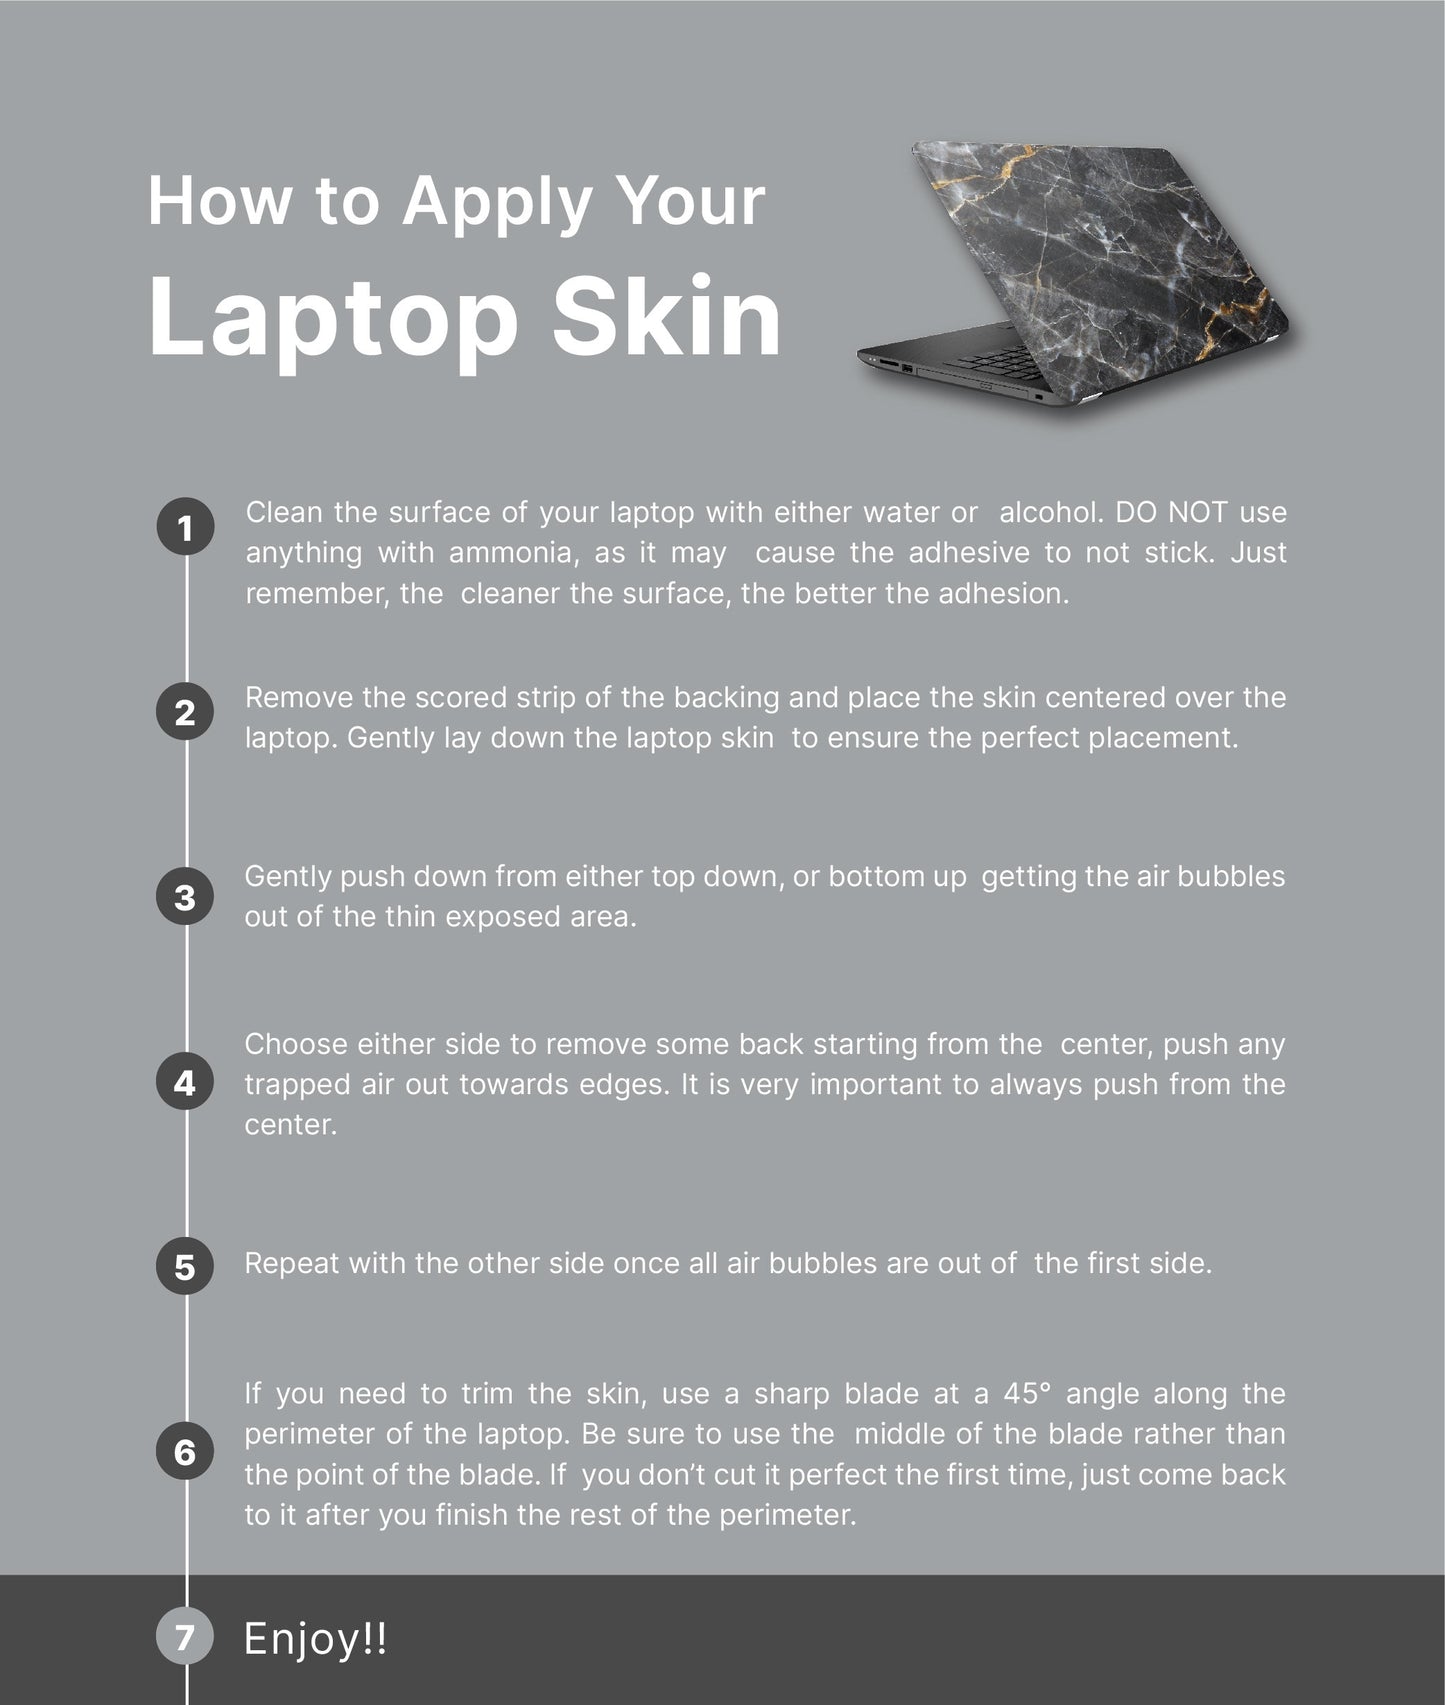 Scandi Floral Laptop Skin, Laptop Cover, Laptop Skins, Removable Laptop Skins, Laptop Decal, Customized Laptop Skin, Laptop Stickers 345